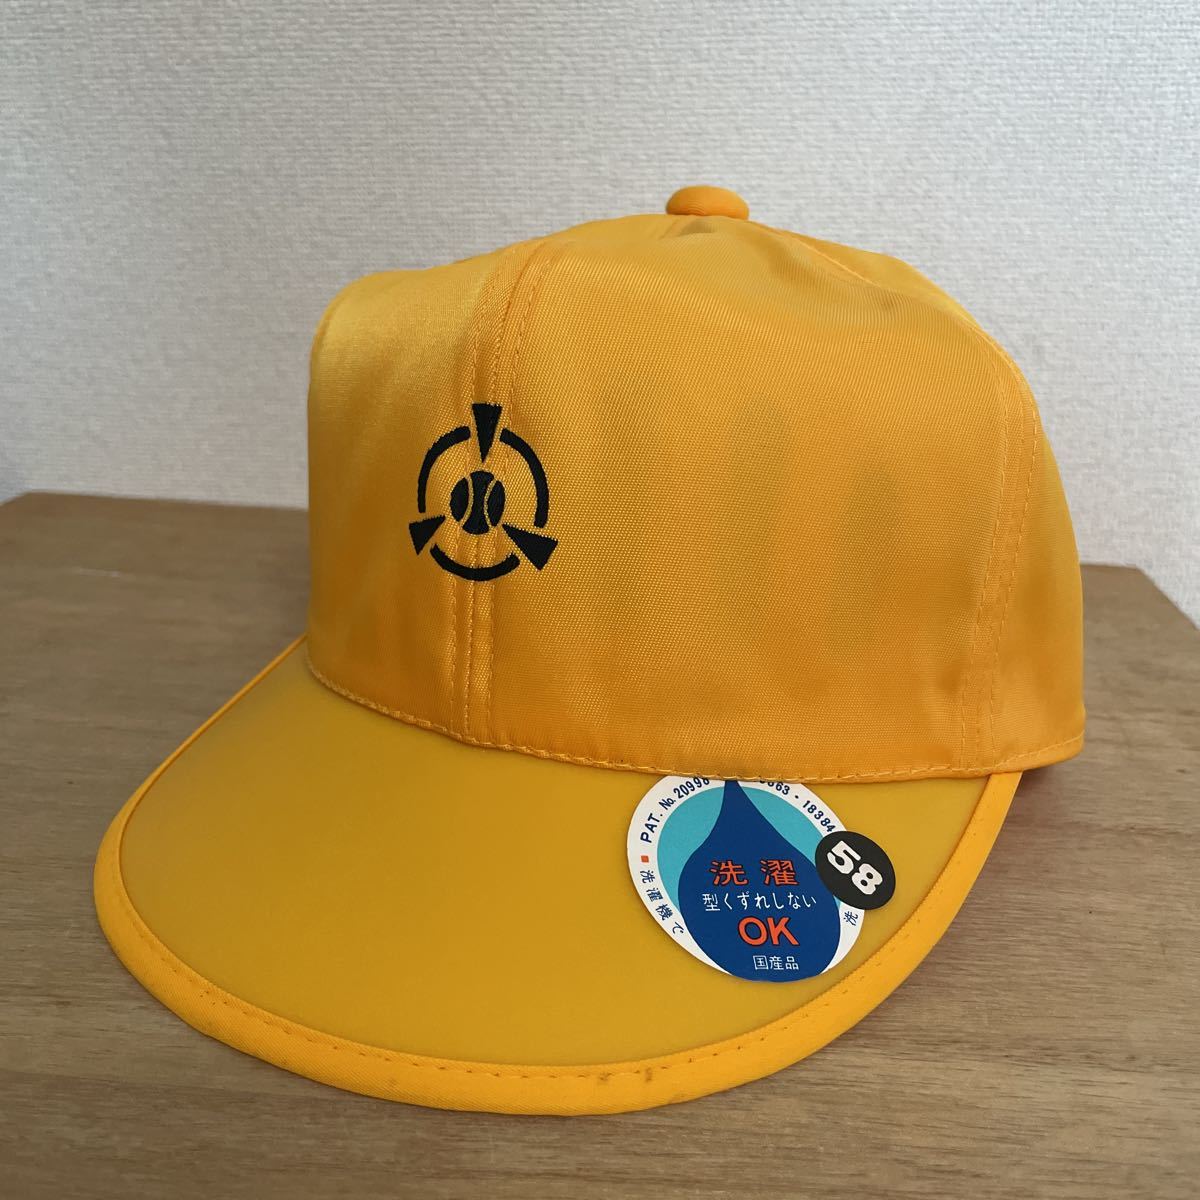  дракон ke мыс маленький с логотипом посещение школы шапочка желтый цвет 58